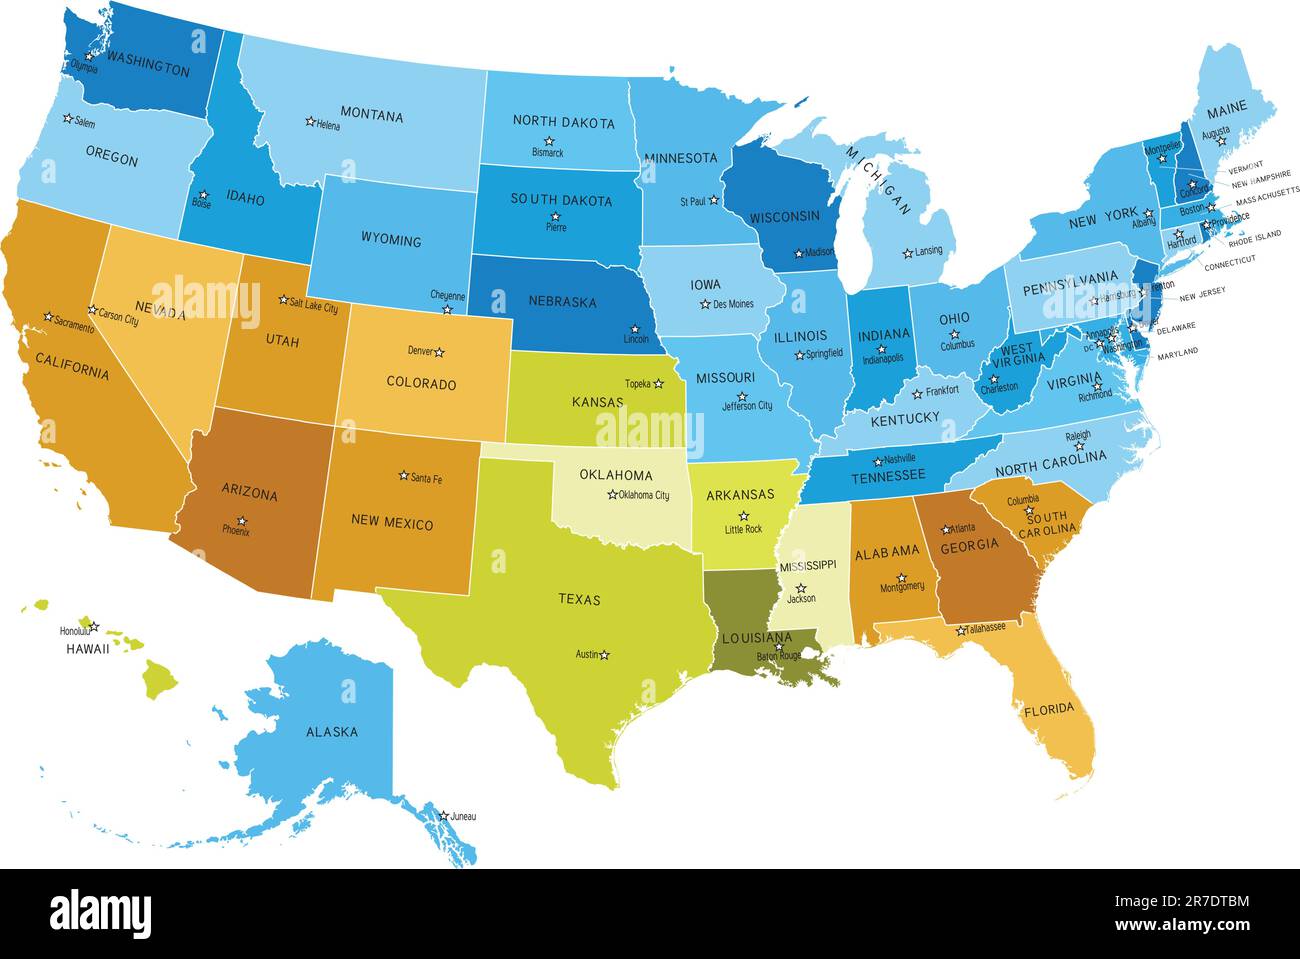 Karte der US-Bundesstaaten mit Namen der Städte. Die EPS-Datei enthält separate Ebenen mit Status- und Statusnamen, Begrenzungen und Ebenen mit Landkreisen. Quelle zuordnen... Stock Vektor